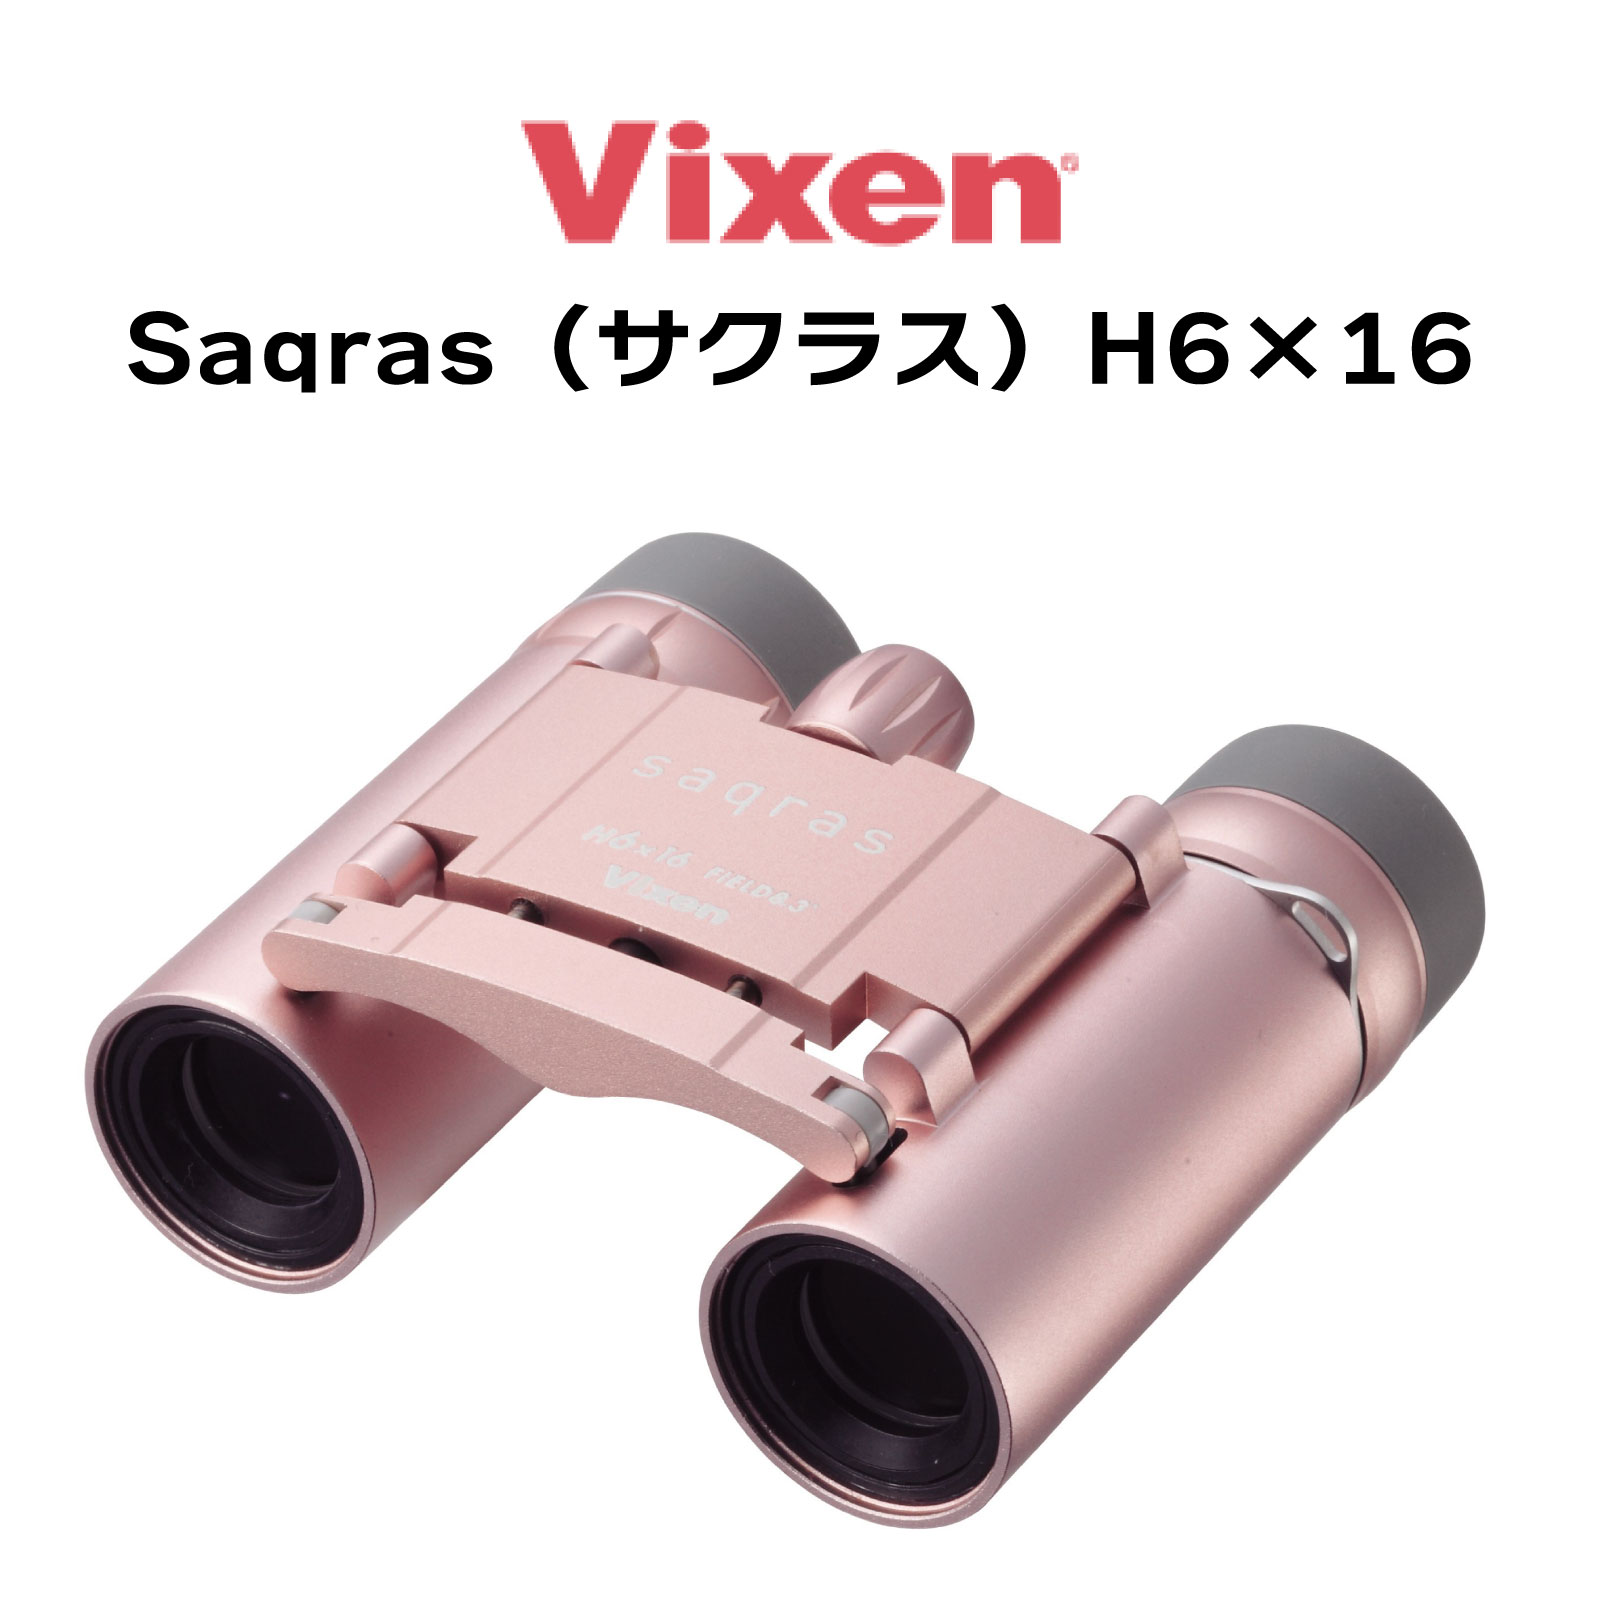 【年中無休 あす楽】Vixen ビクセン 双眼鏡 Saqras(サクラス) H6×16 16481-3 6倍 女性のための双眼鏡 軽い おしゃれ かわいい 日本製 コンパクト 小型 軽量ボディ